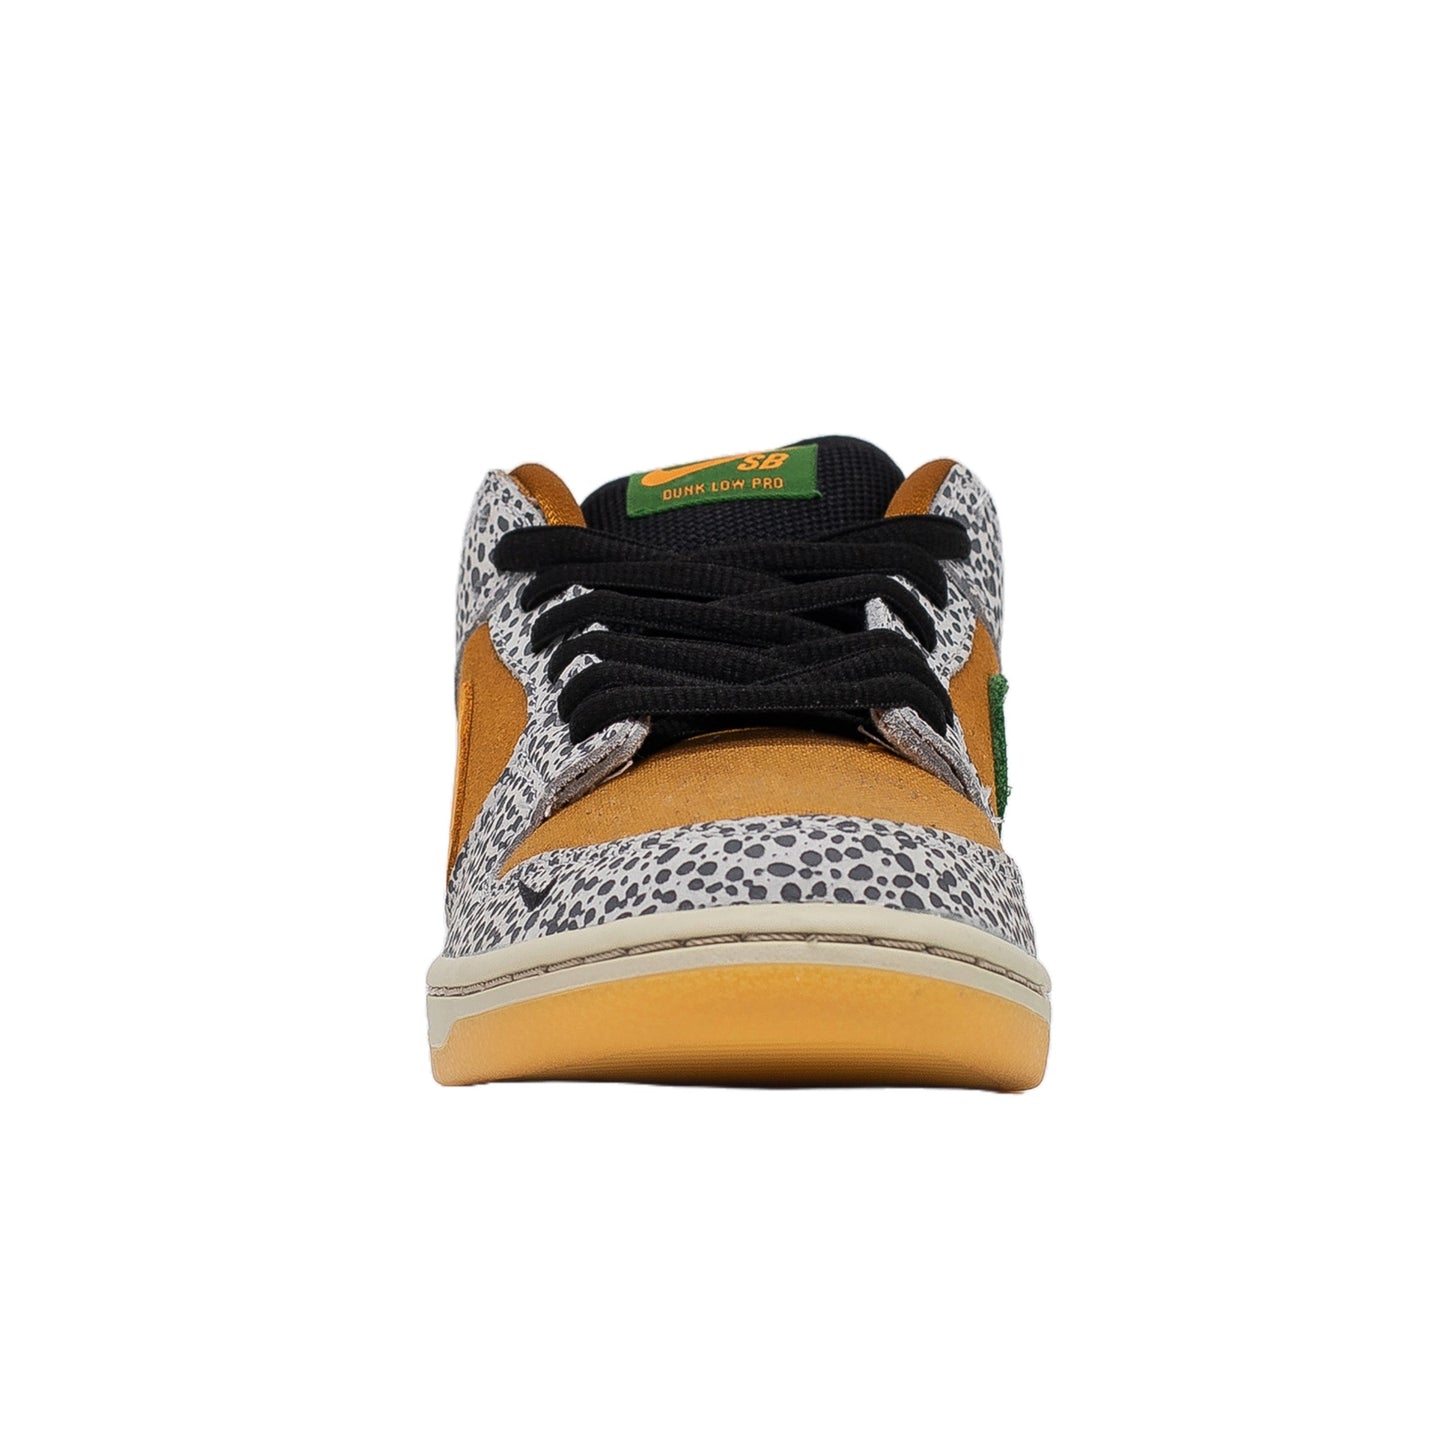 Nike SB Dunk Low, Safari